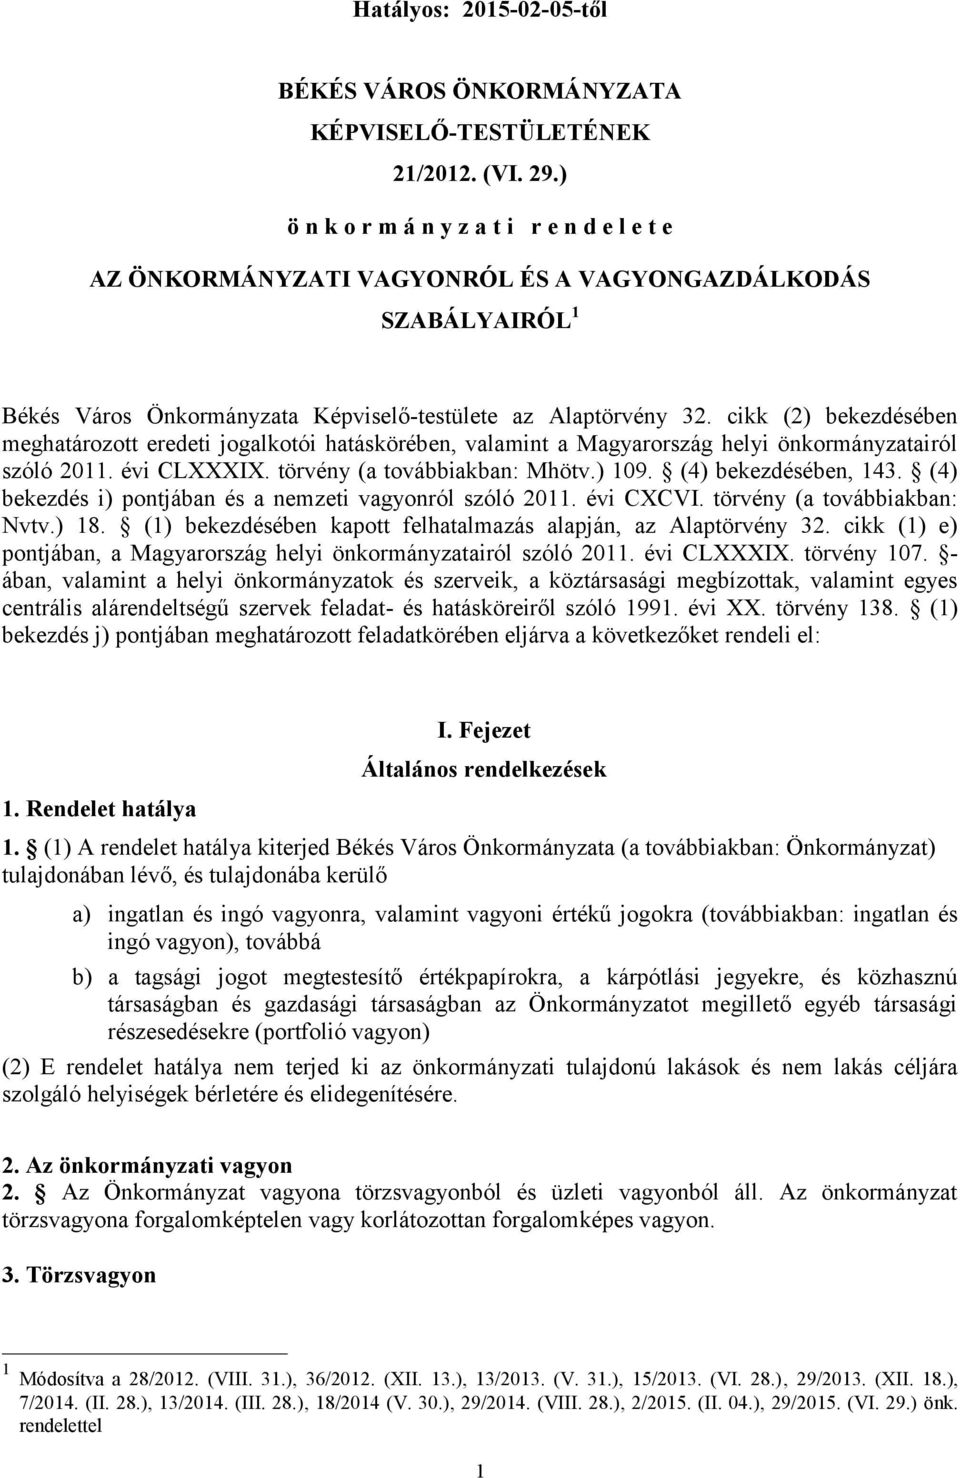 cikk (2) bekezdésében meghatározott eredeti jogalkotói hatáskörében, valamint a Magyarország helyi önkormányzatairól szóló 2011. évi CLXXXIX. törvény (a továbbiakban: Mhötv.) 109.